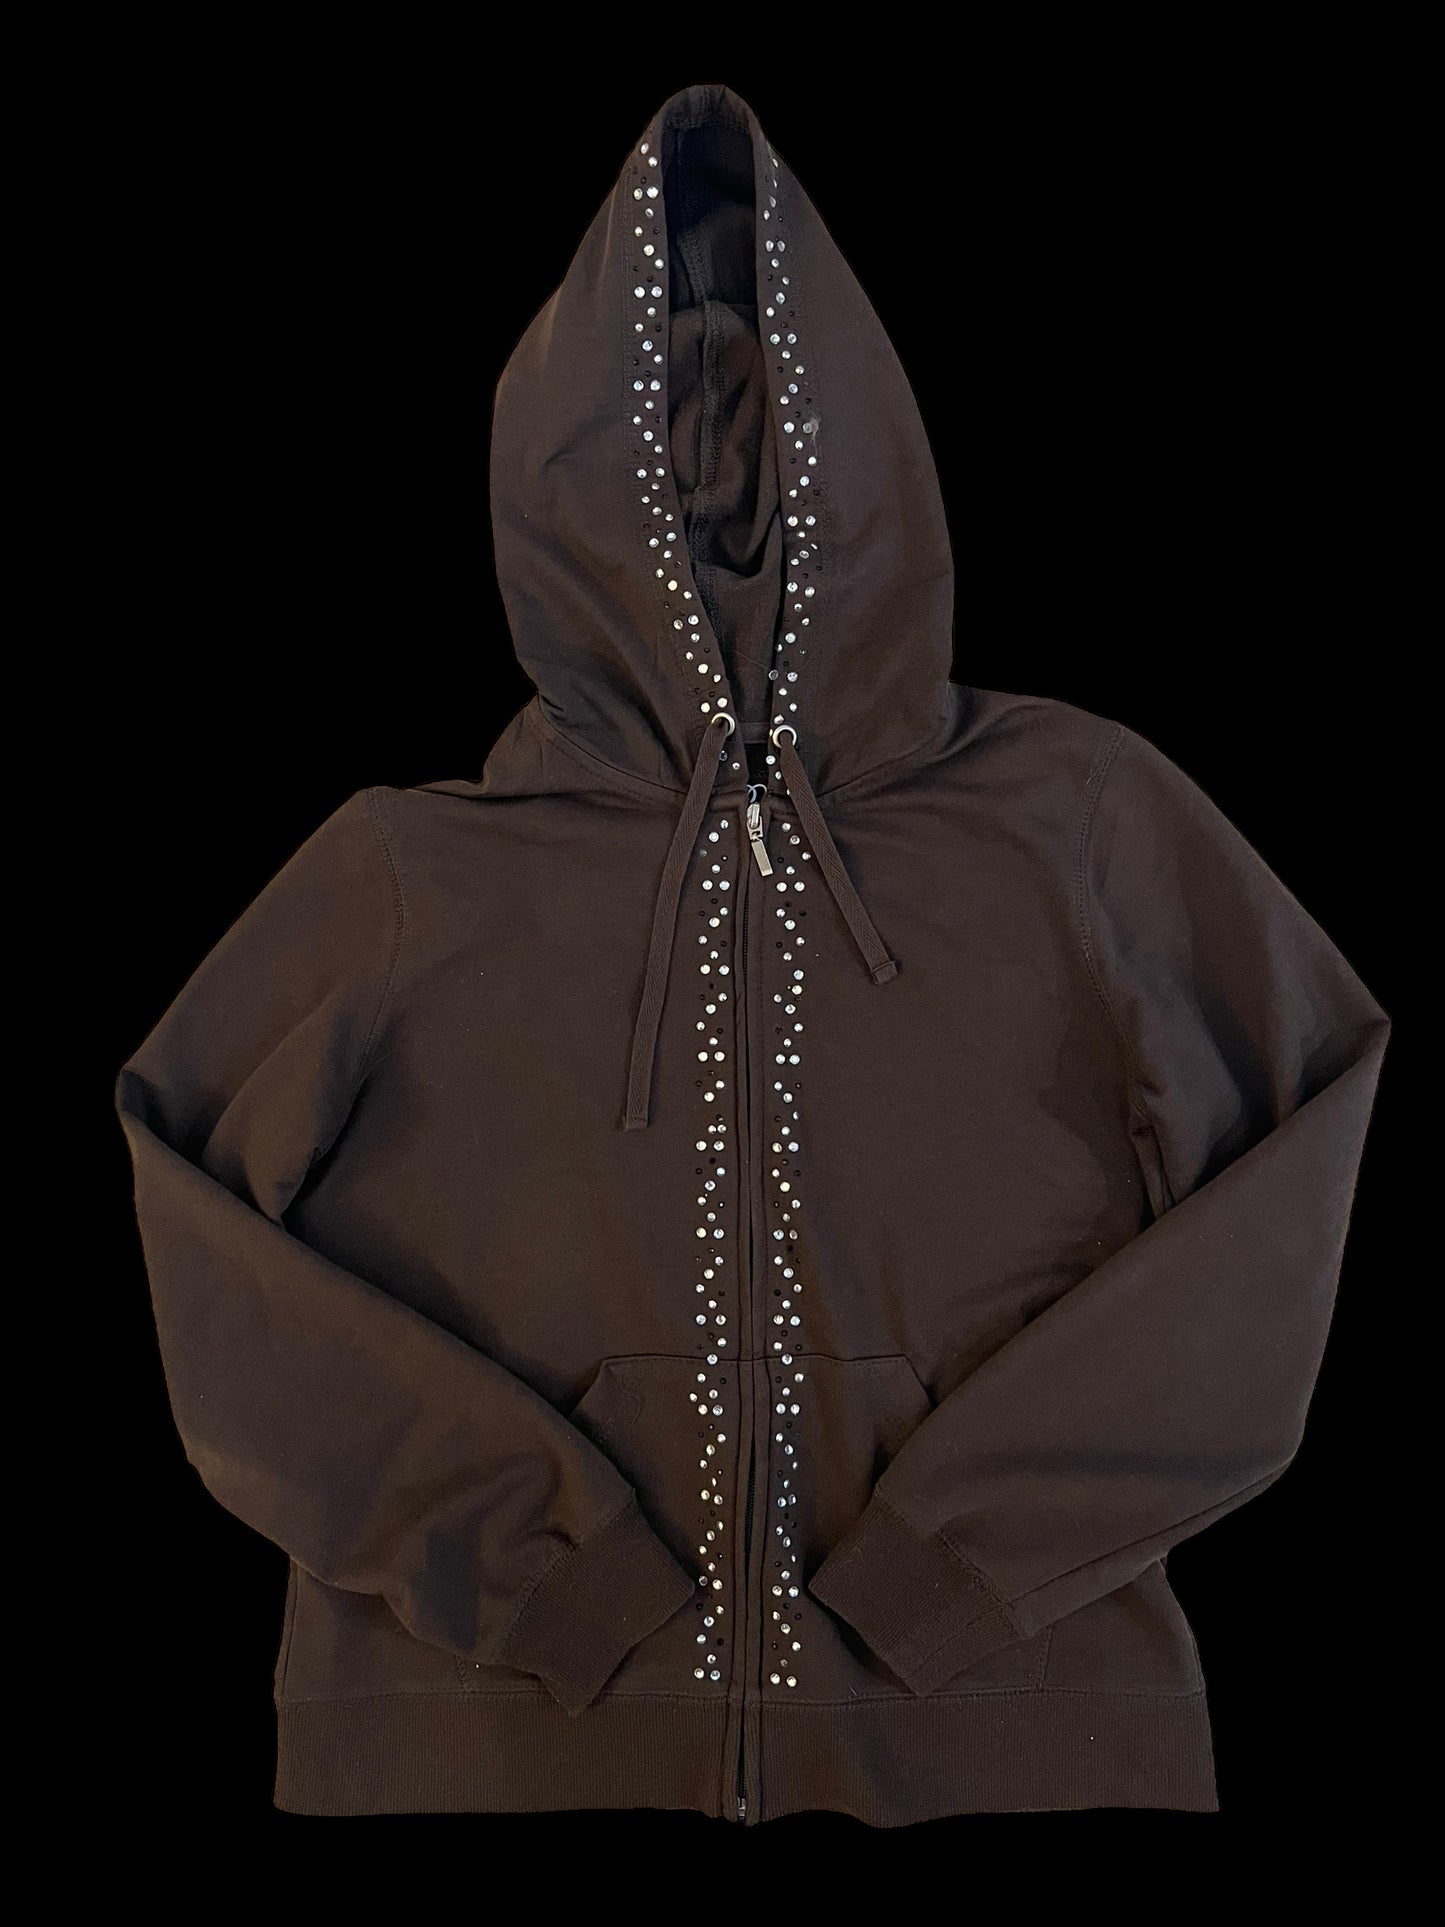 Embellished brown hoodie